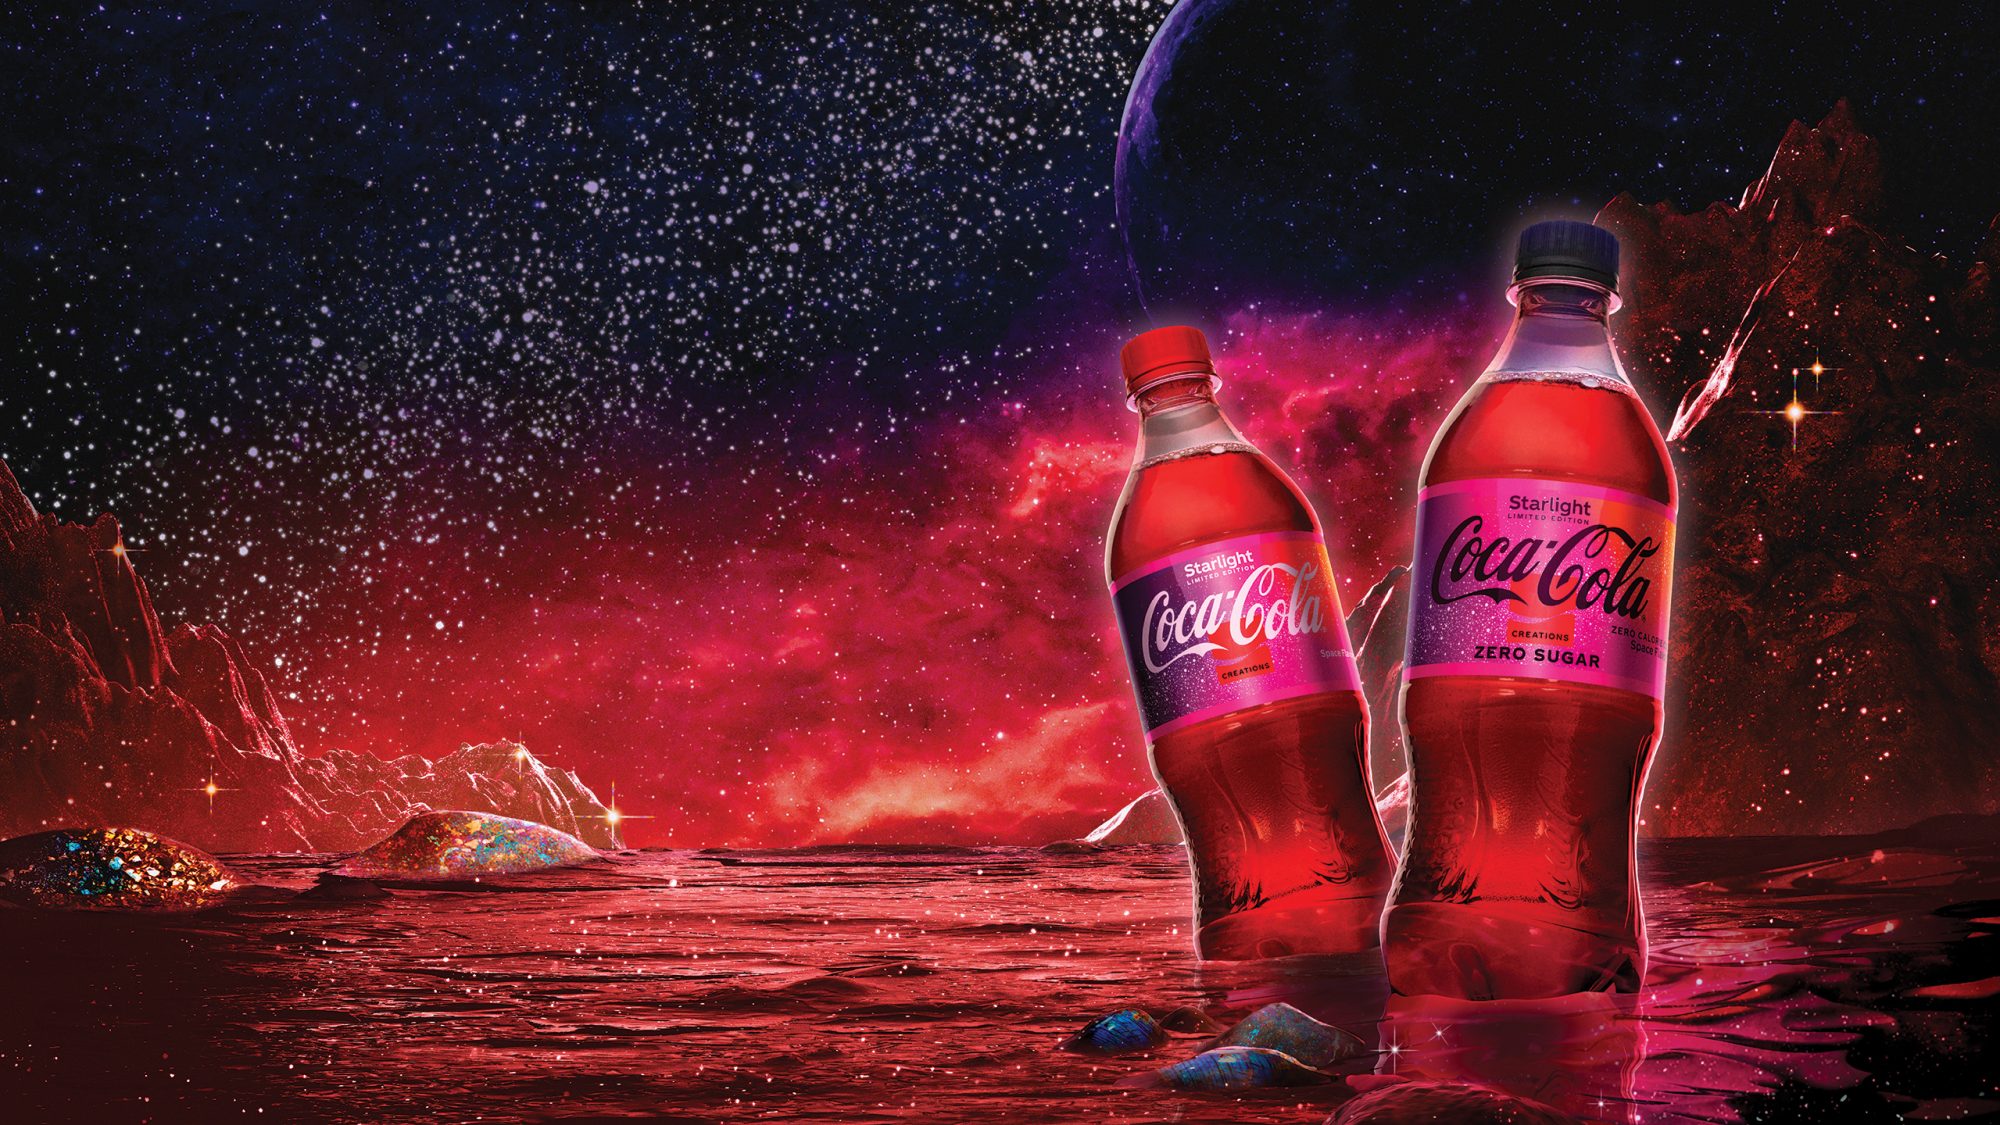 Coca-Cola lança novo sabor espacial chamado "Starlight" - ADNEWS